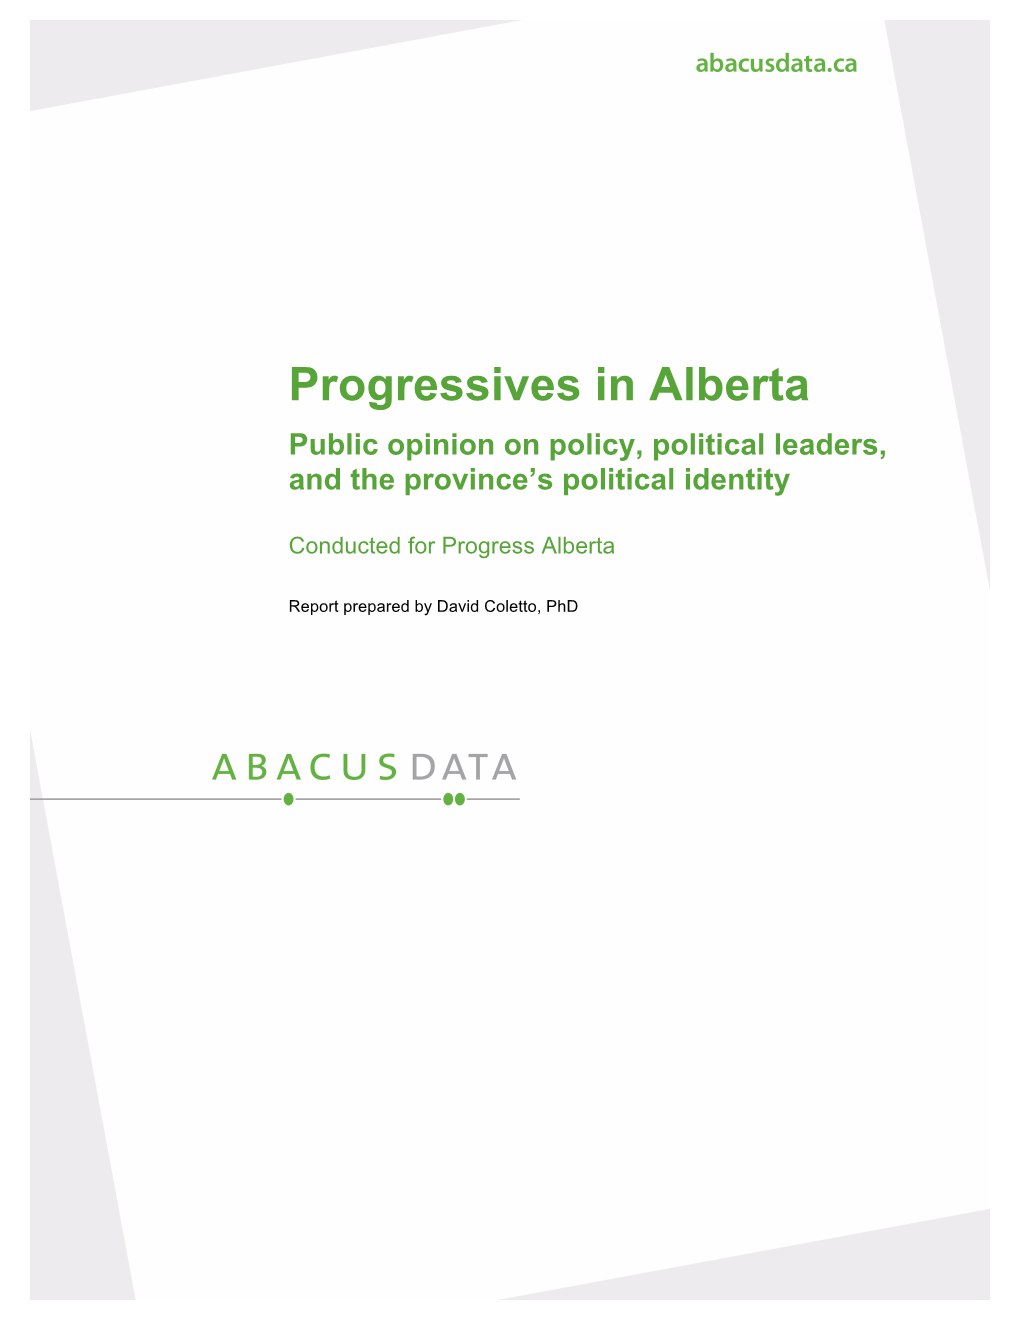 Progress Alberta